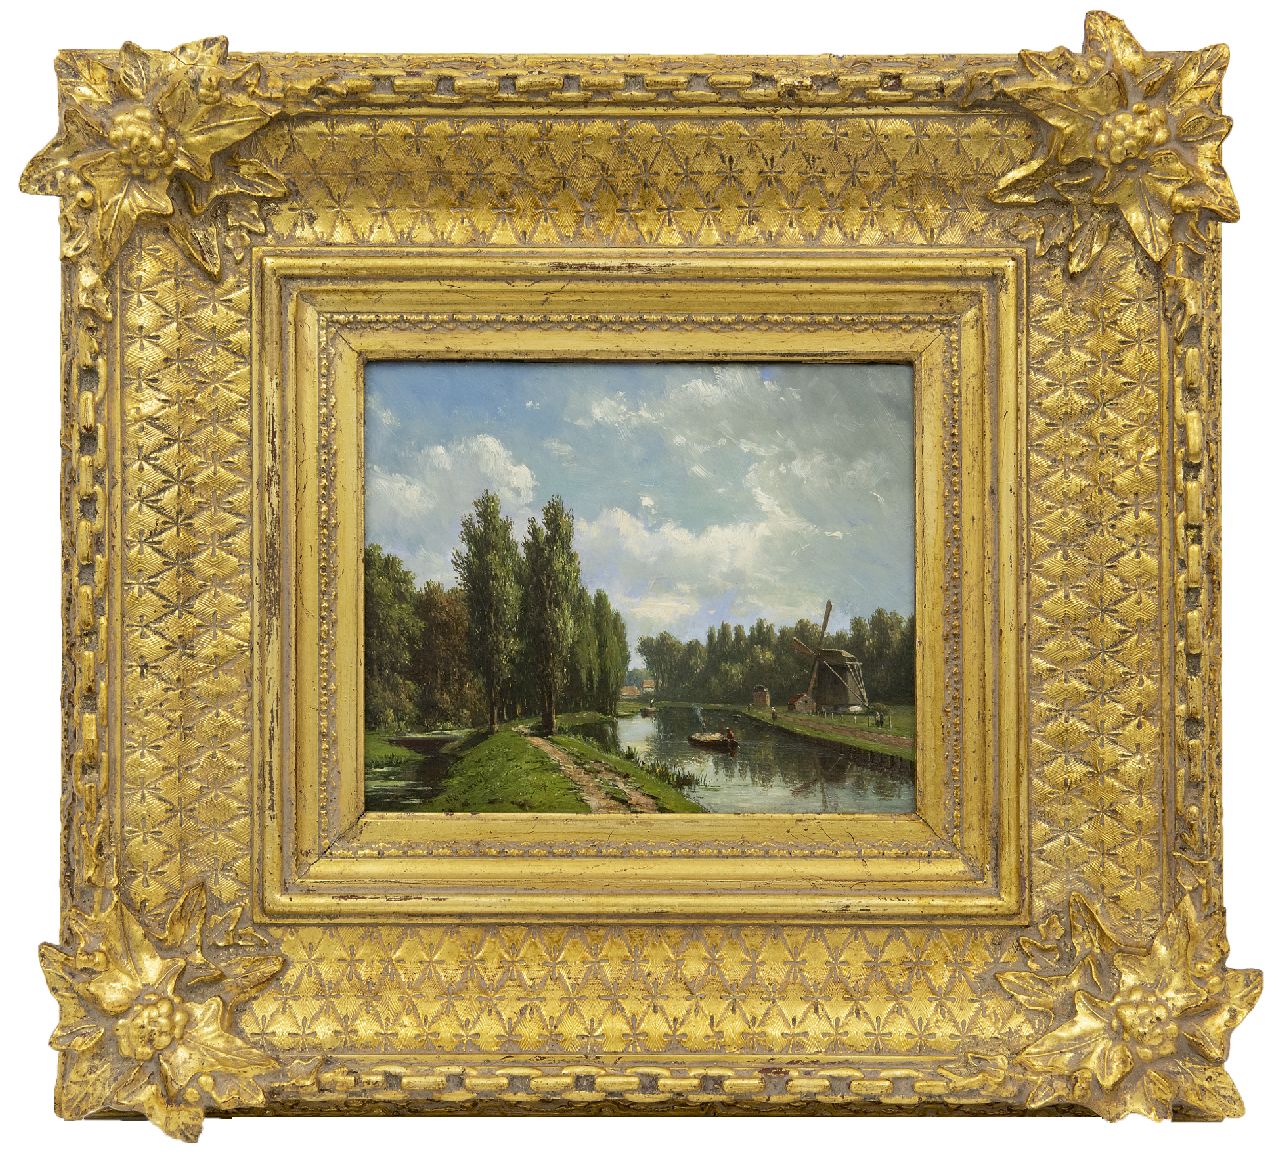 Maaten J.J. van der | Jacob Jan van der Maaten | Schilderijen te koop aangeboden | De Vliet bij Voorburg, olieverf op paneel 16,1 x 20,0 cm, gesigneerd linksonder